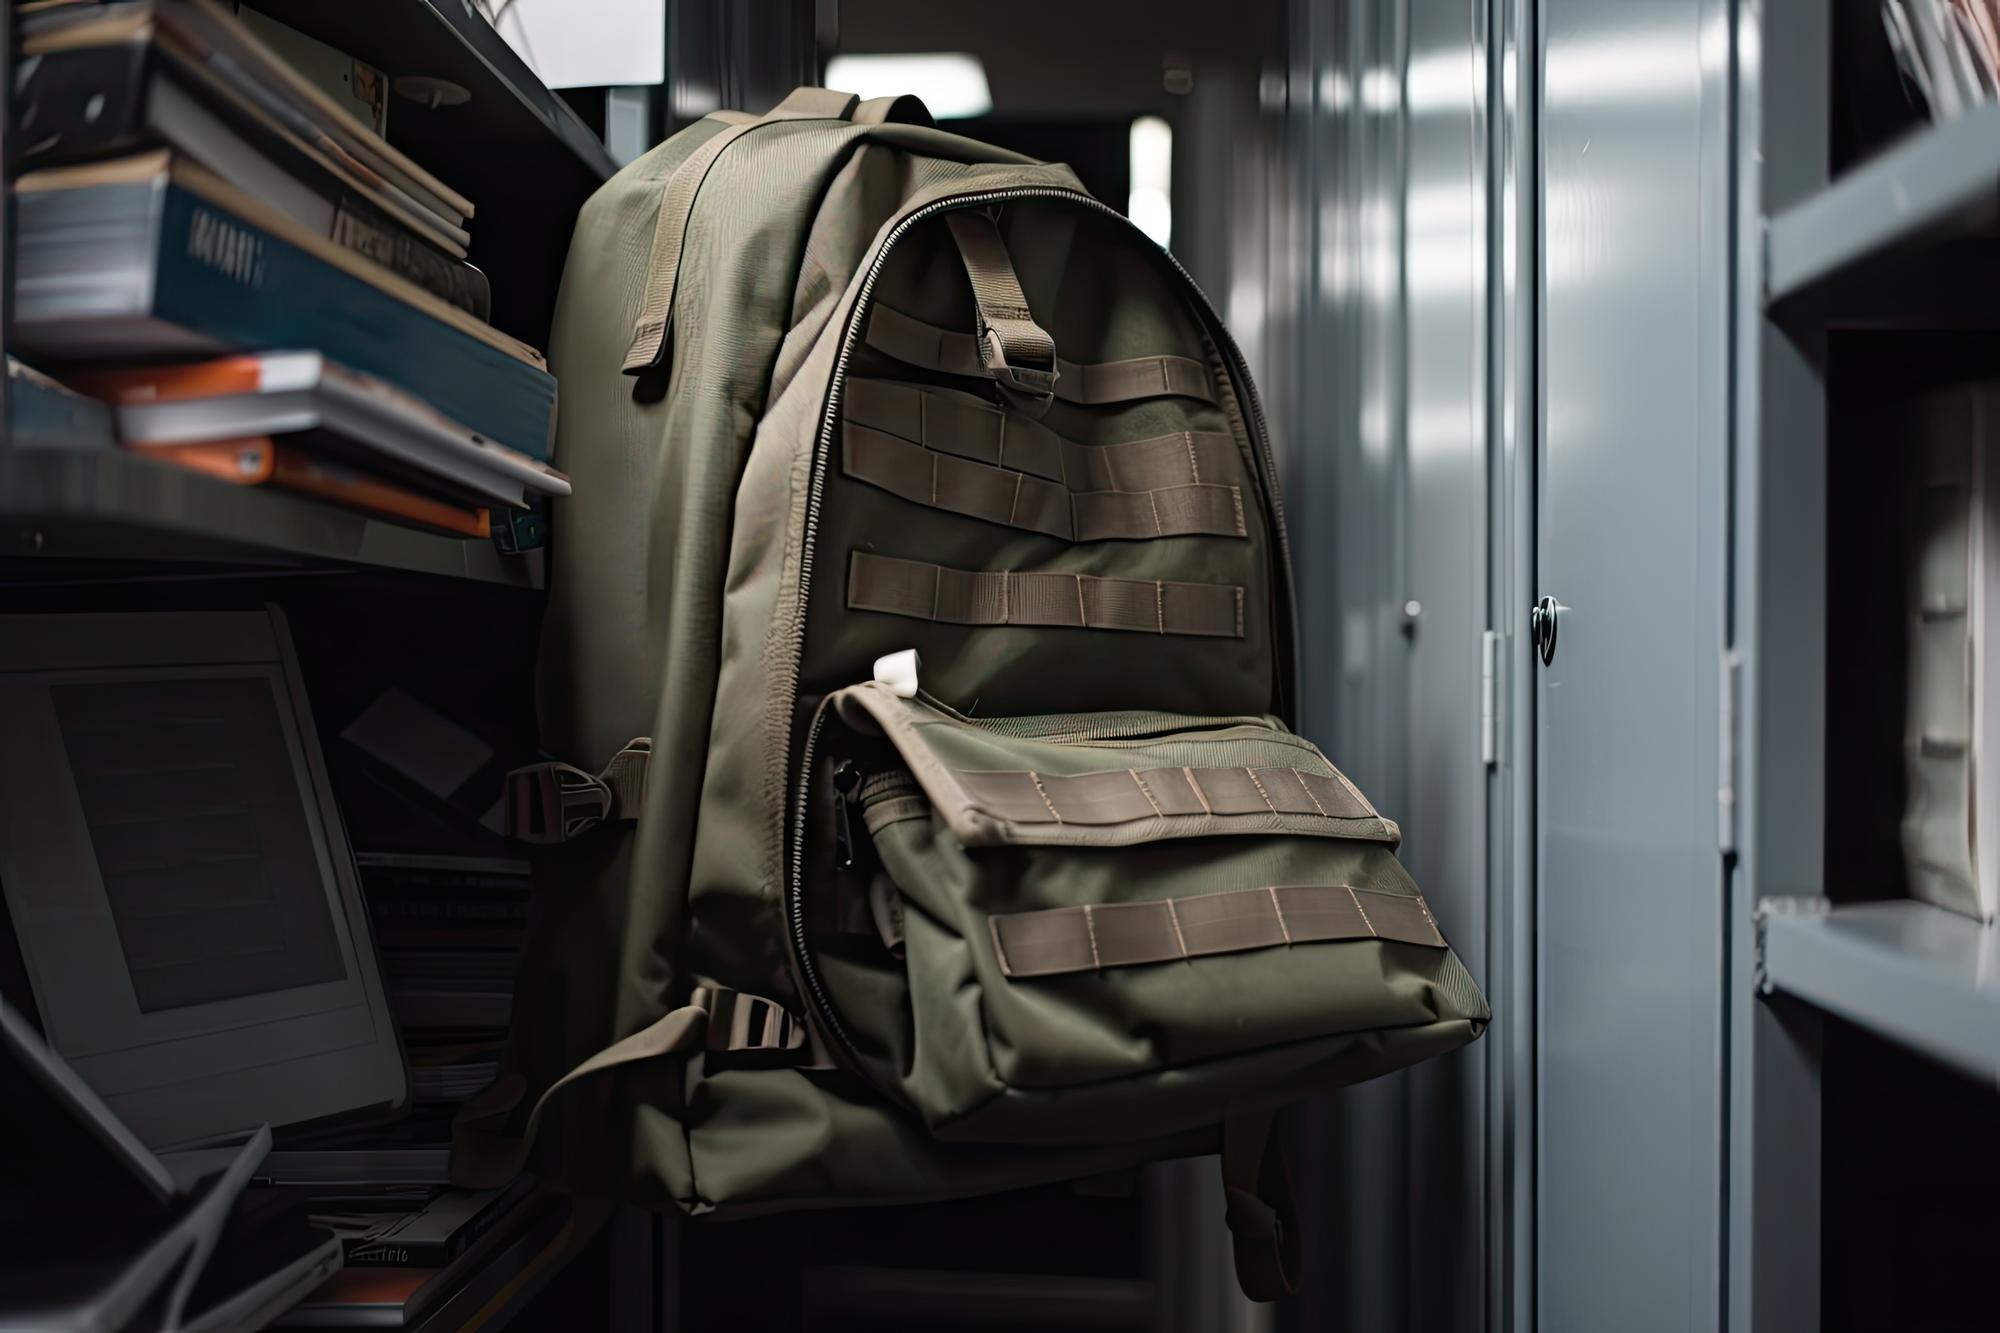 Militaire rugzak hangend aan schoolkast met schoolboeken en notitieboekjes erin